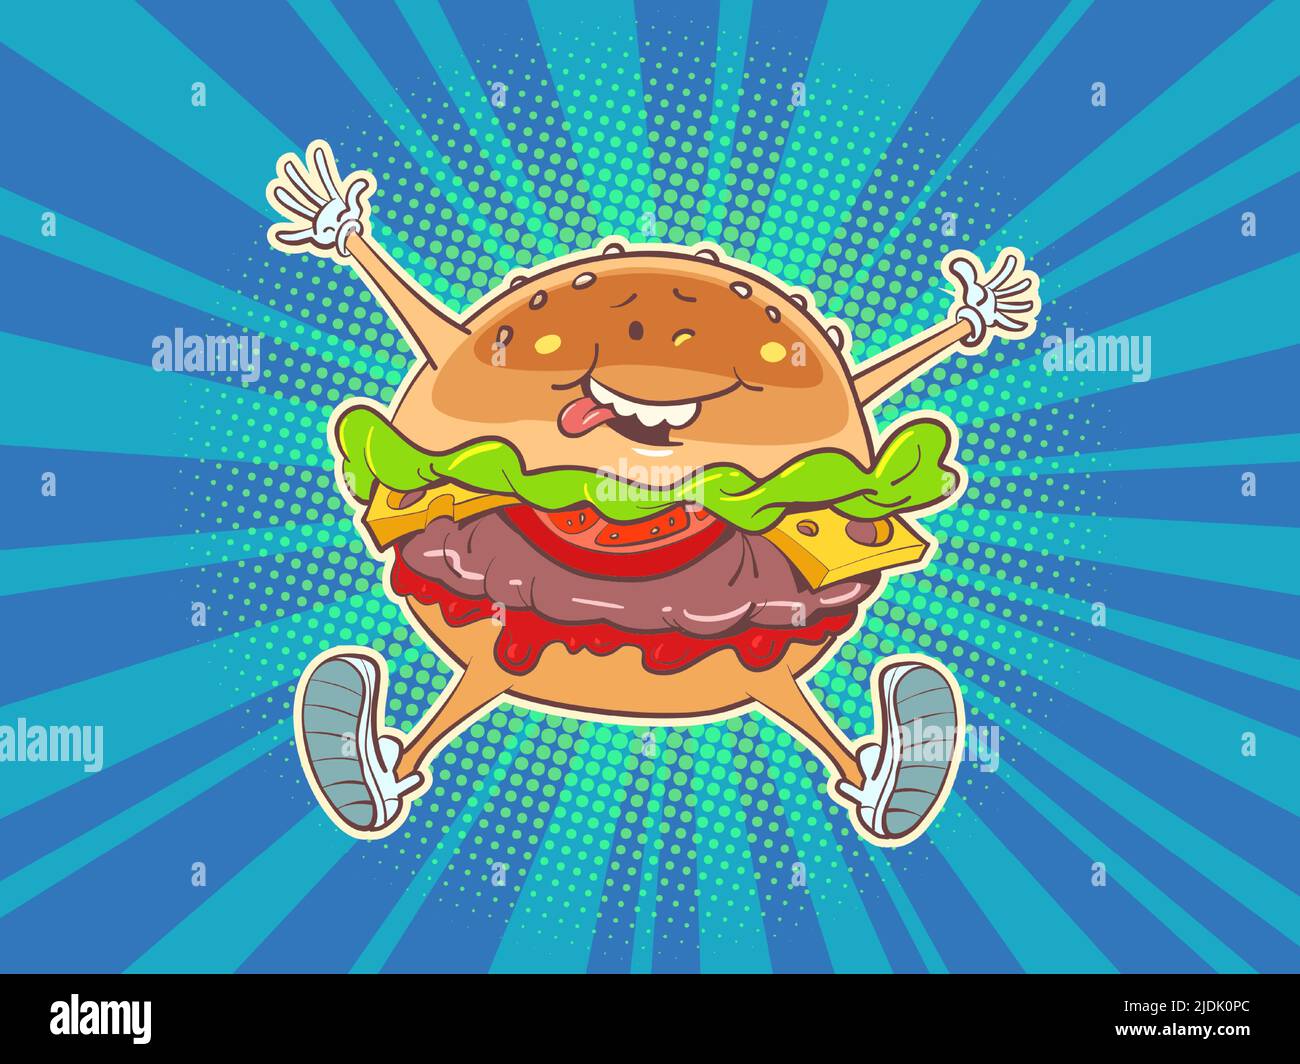 Alegre hamburguesa alegre, carácter de comida rápida. Restaurante de la calle. Kitsch cómic dibujo a mano estilo vintage ilustración Ilustración del Vector